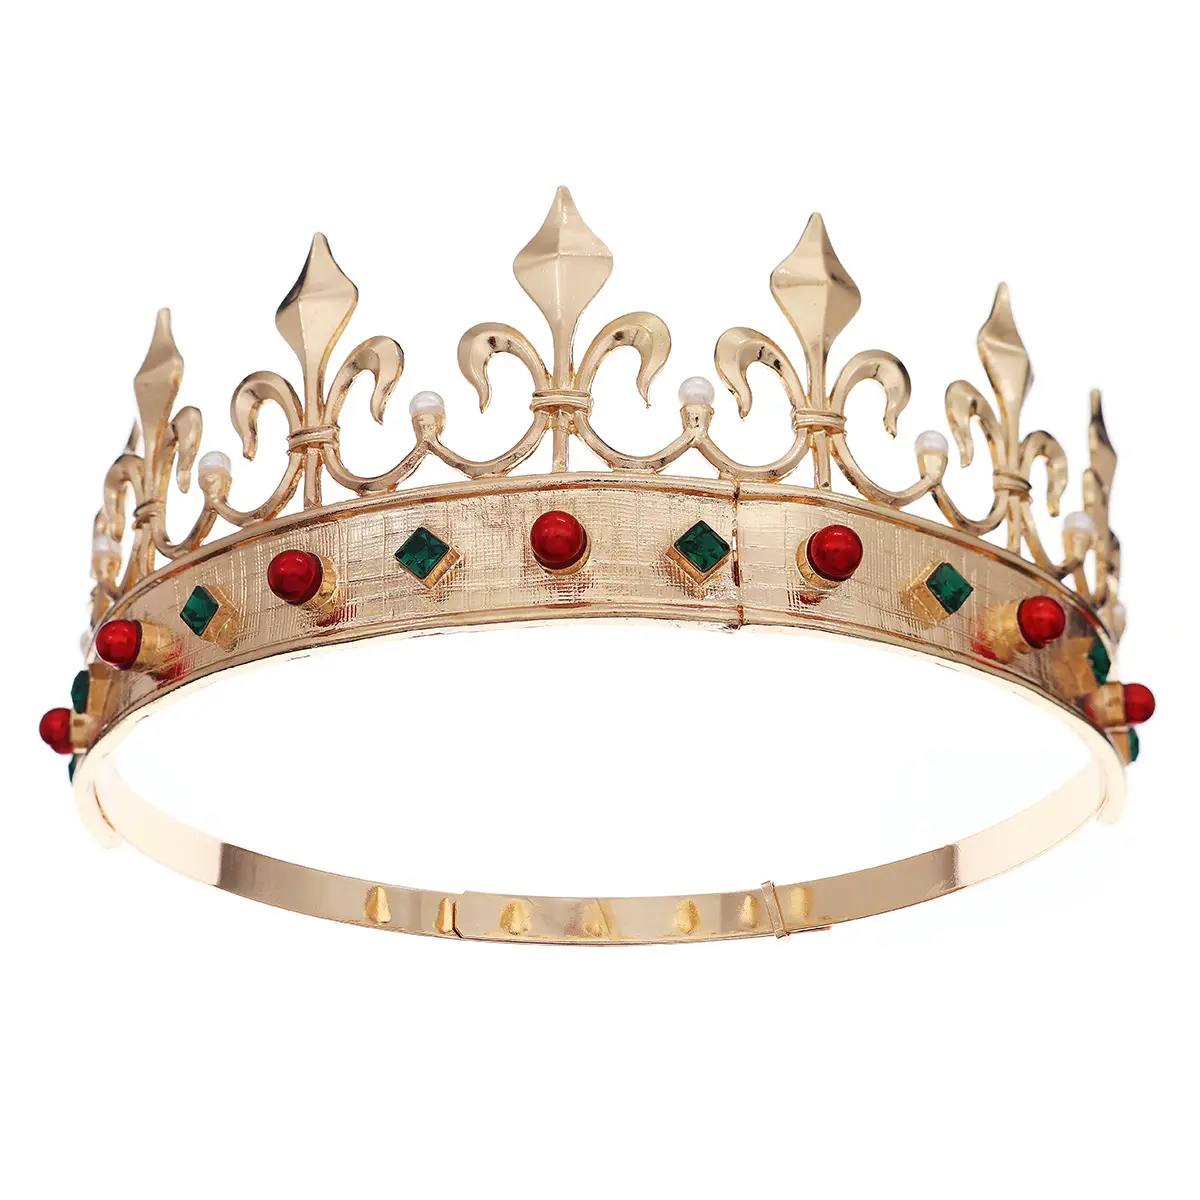 Y huanhuan classica corona re regolabile retrò rosso e verde due colori gioiello tiara festa sfera in lega rotonda corona